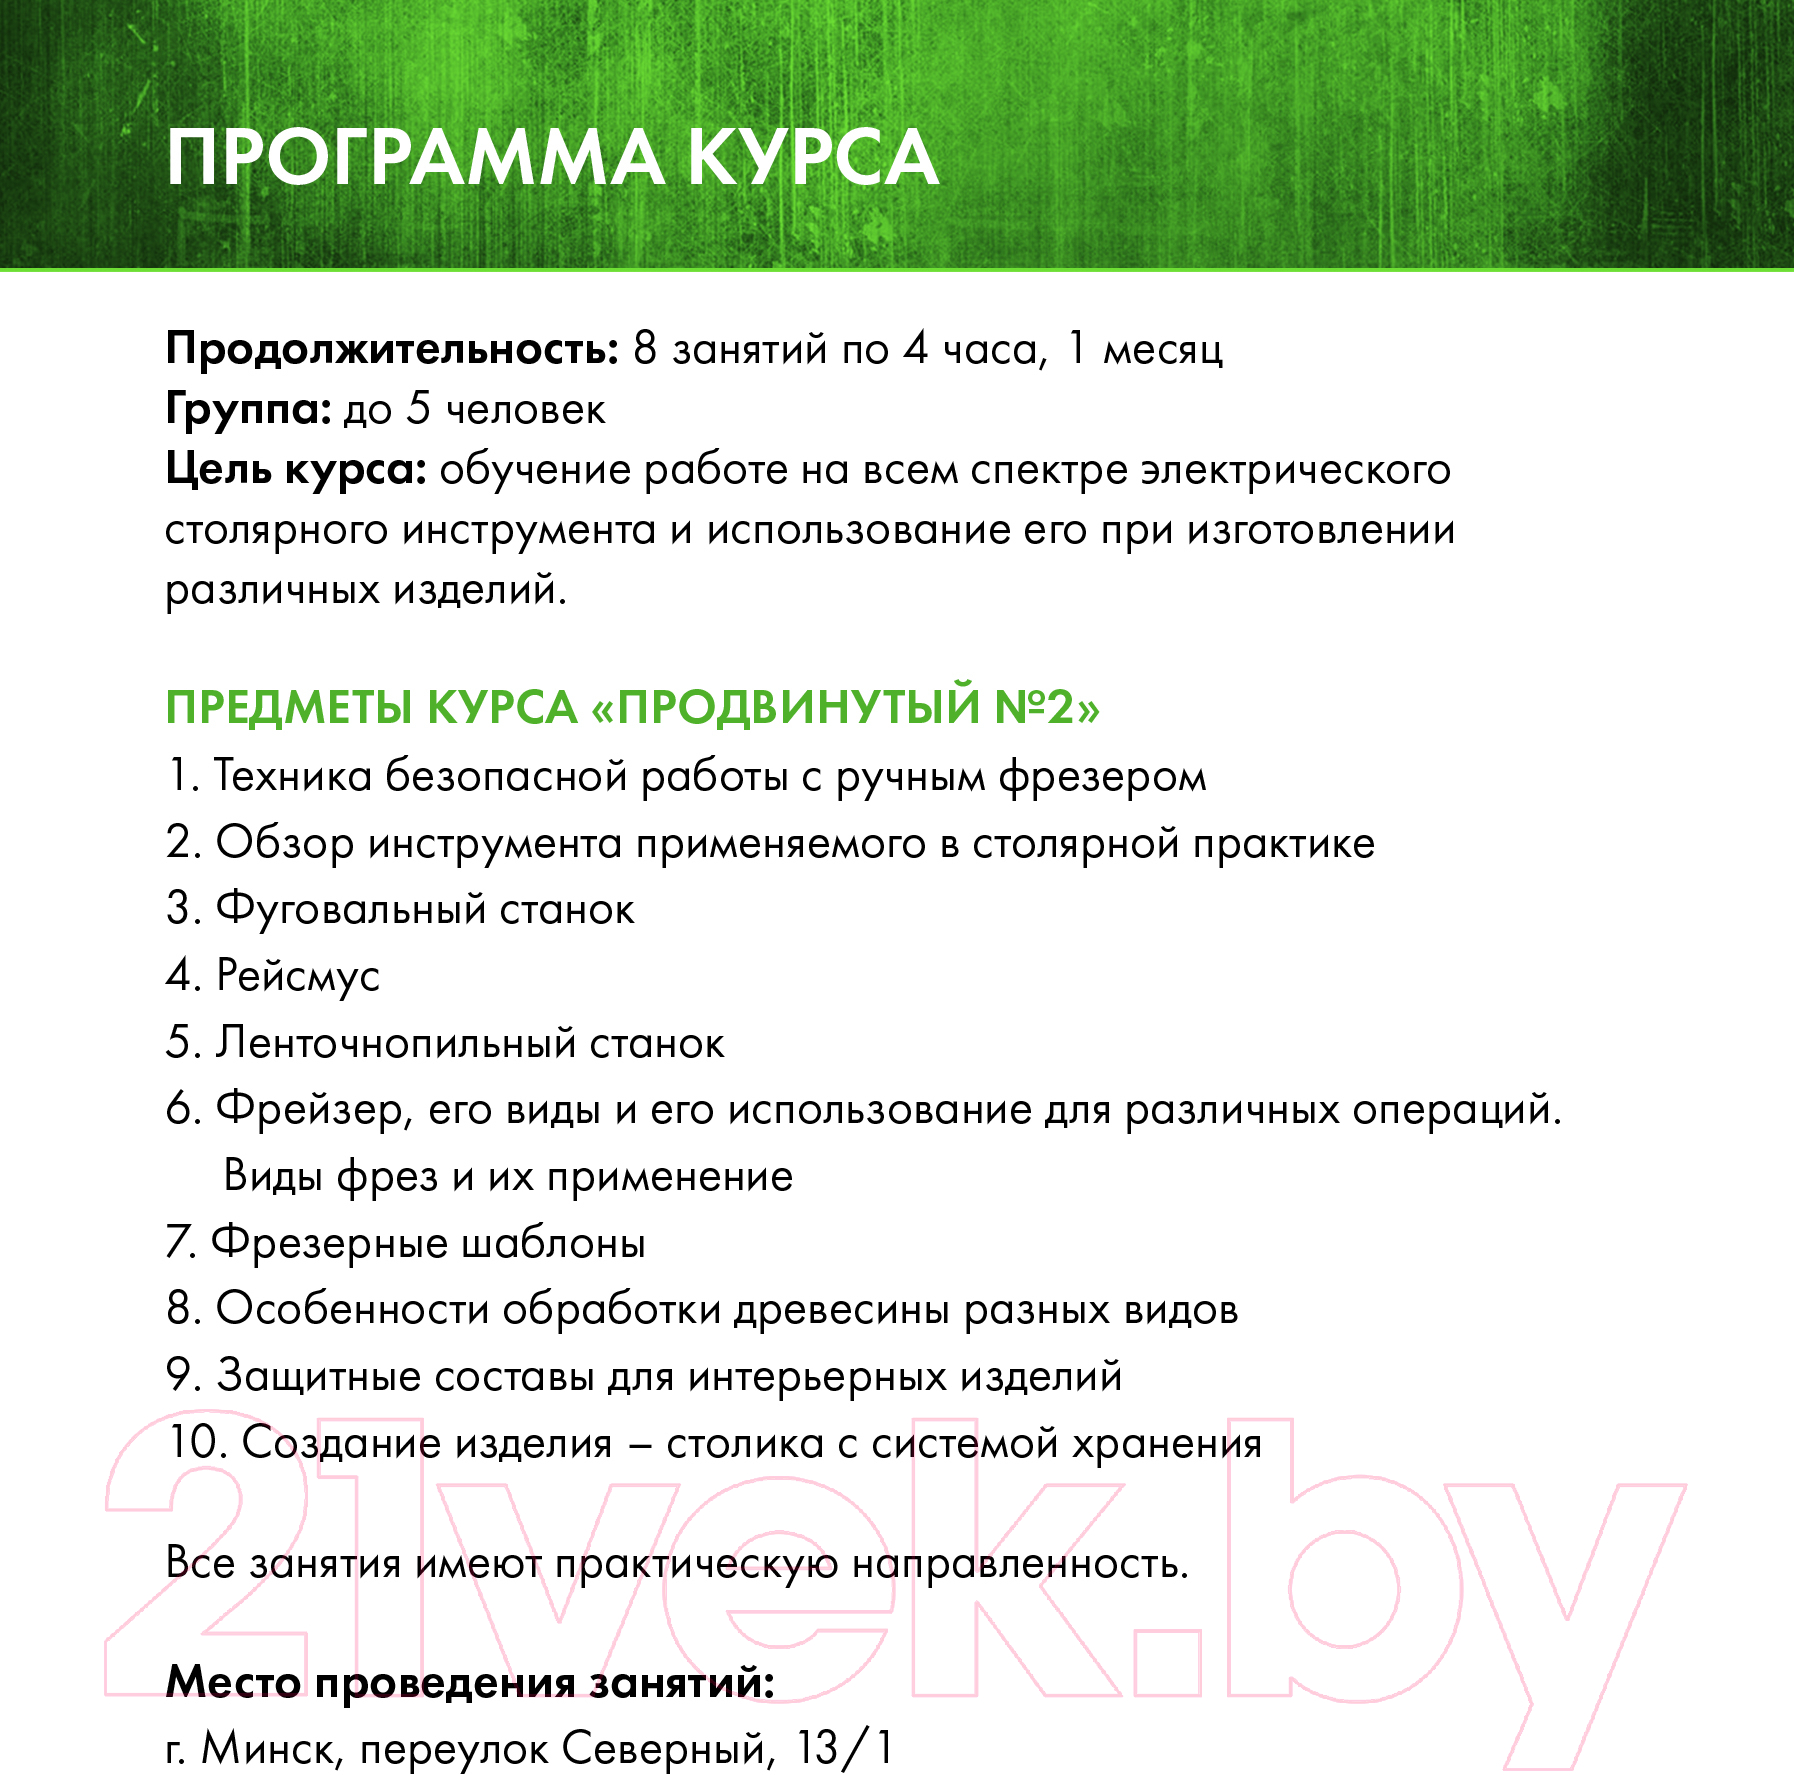 Сертификат на столярные курсы izDereva.by Продвинутый №2